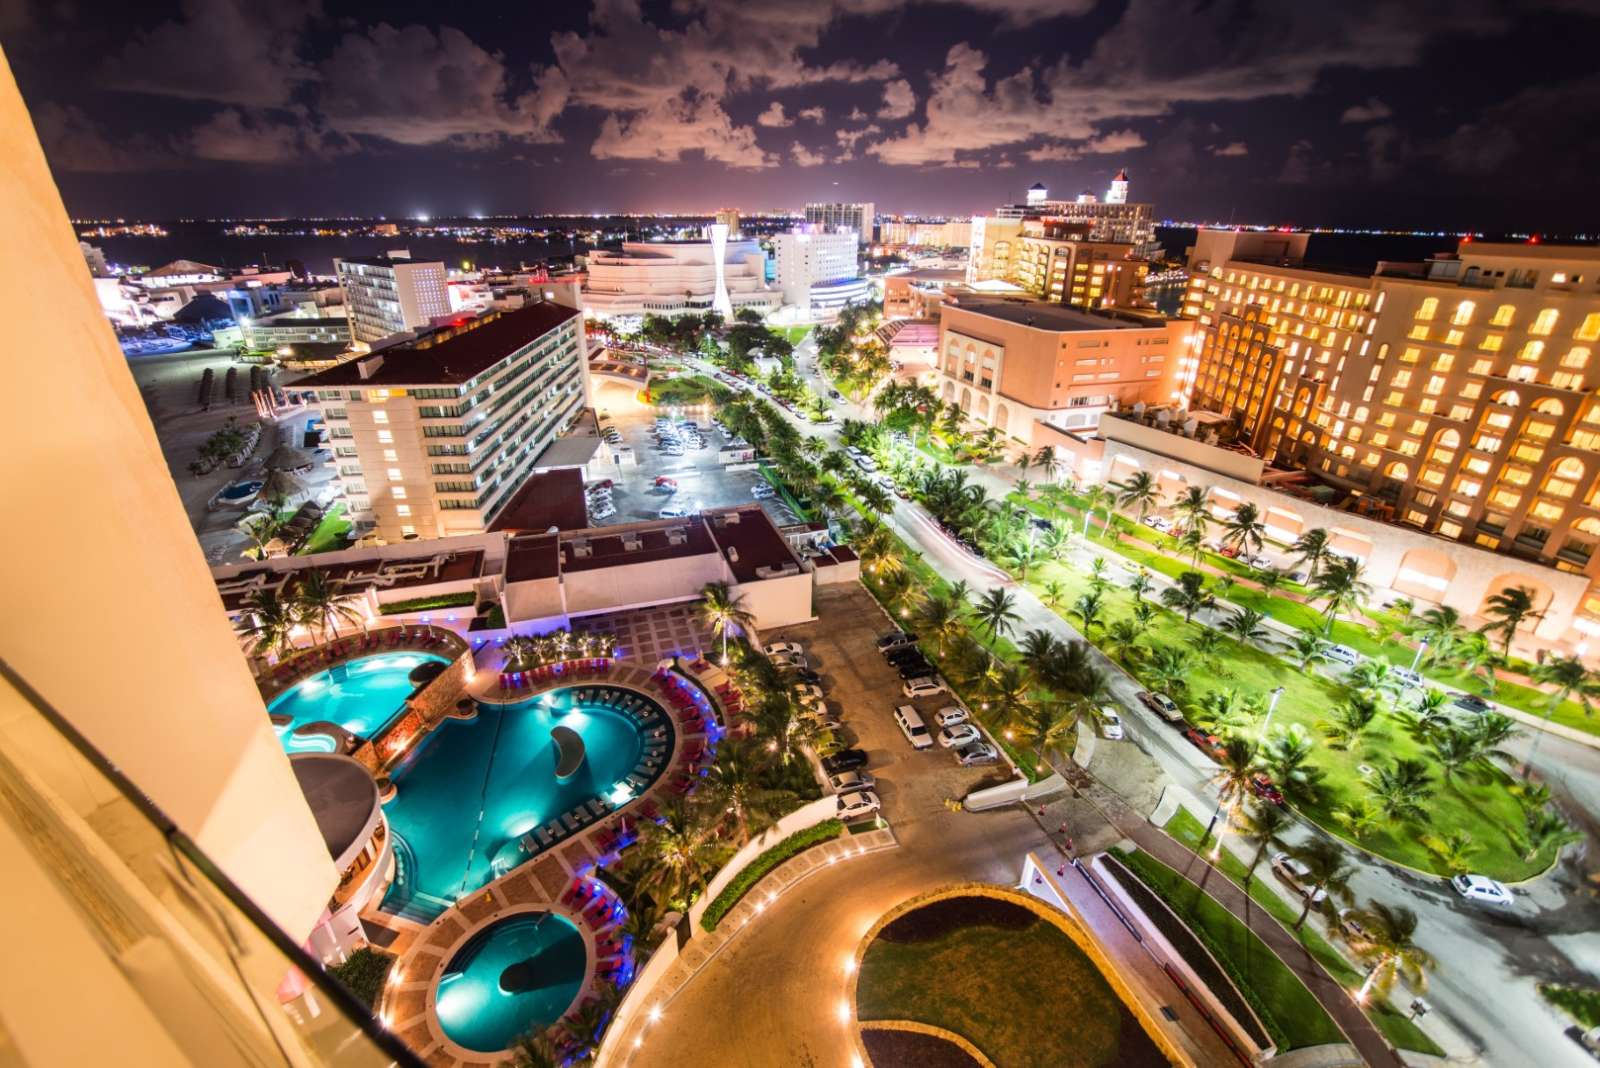 The hotel zone in Cancun